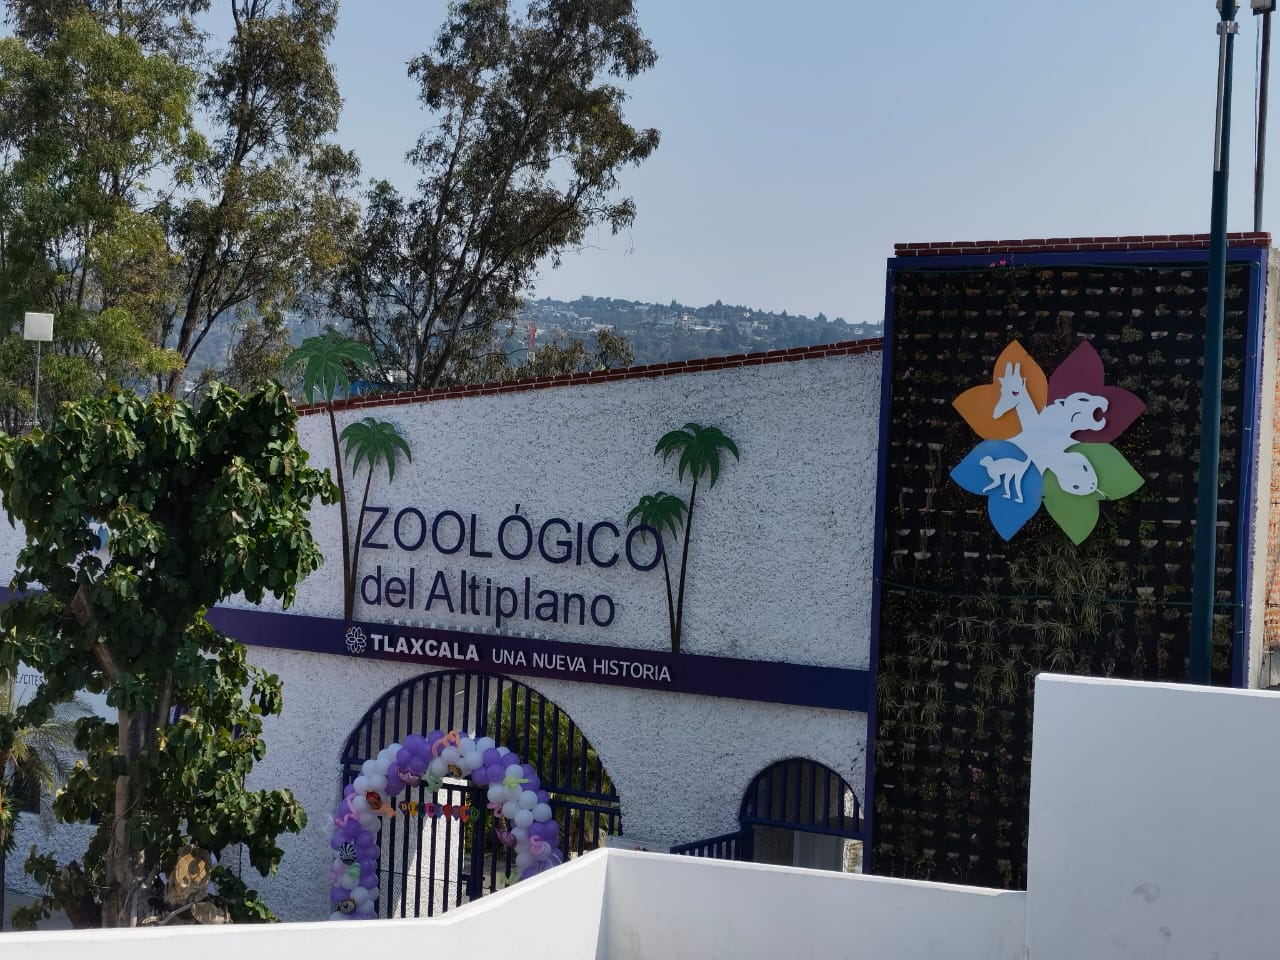 Cierran Zoológico del Altiplano por remodelación